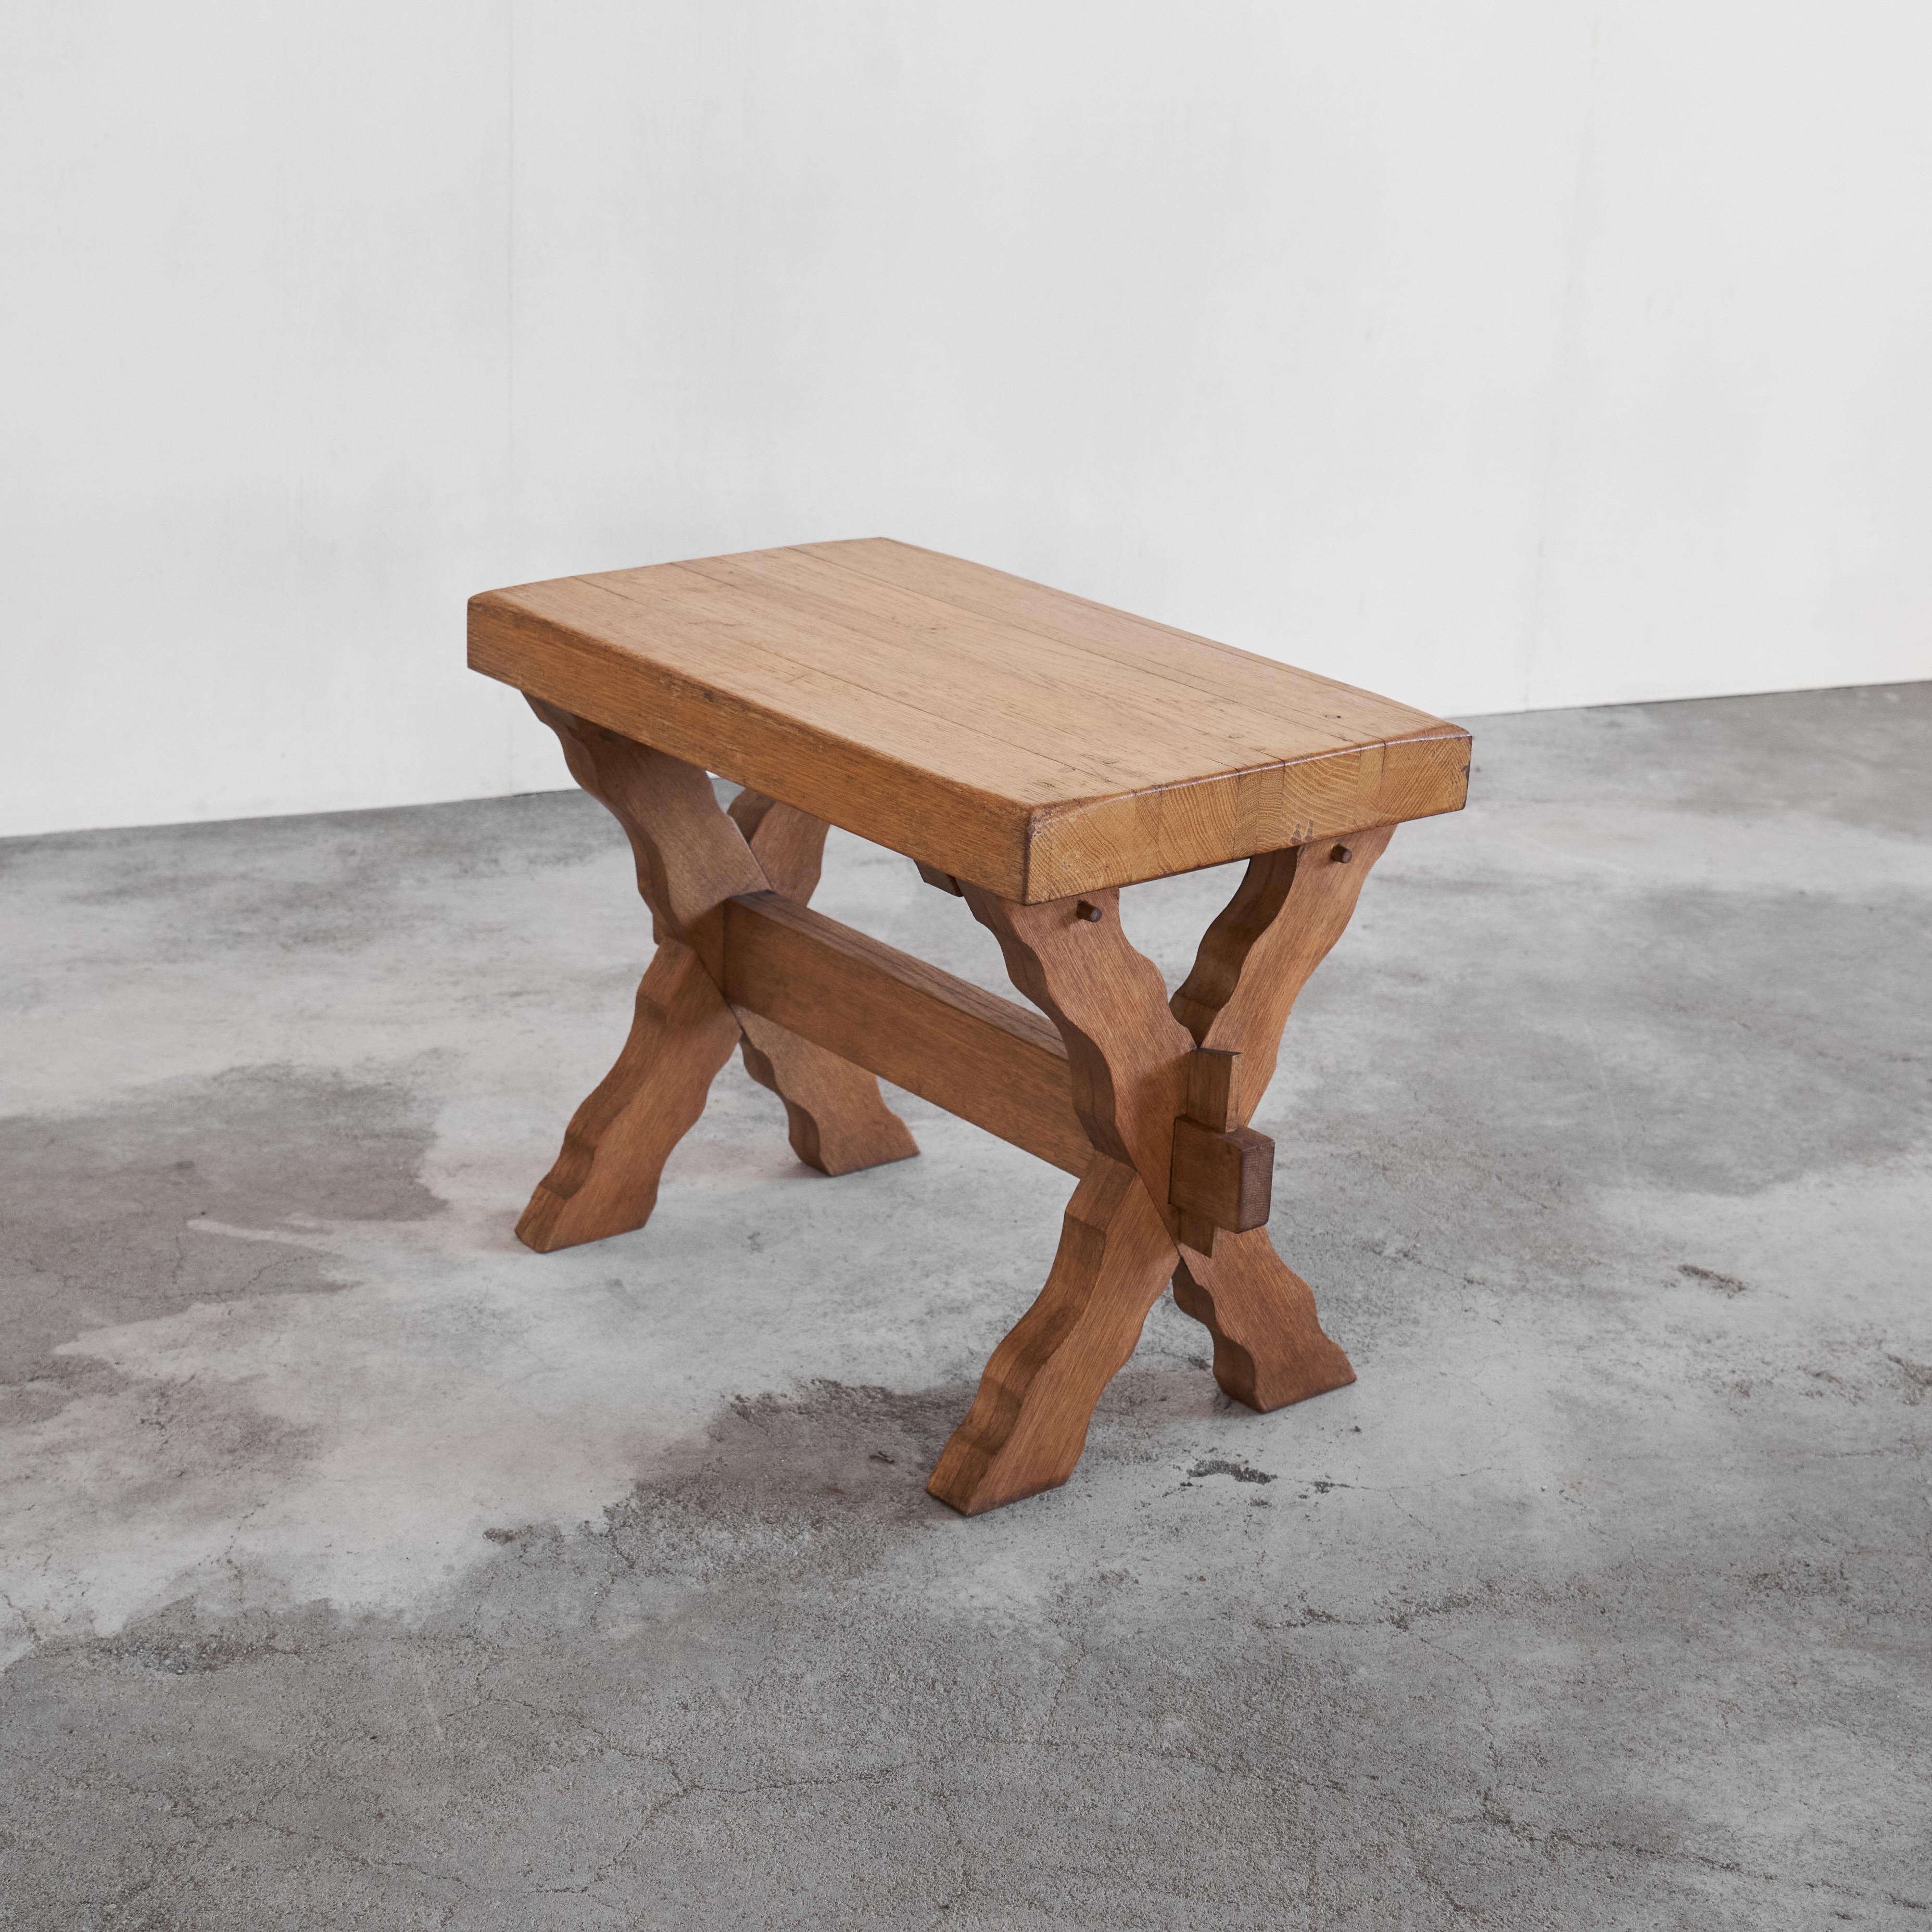 Table d'appoint sculpturale à pieds croisés en bois massif 1940s.

Superbe table / table d'appoint sculpturale à pieds croisés en bois massif épais, fabriquée au milieu du 20e siècle. D'aspect brut et rustique, cette table est un meuble très honnête